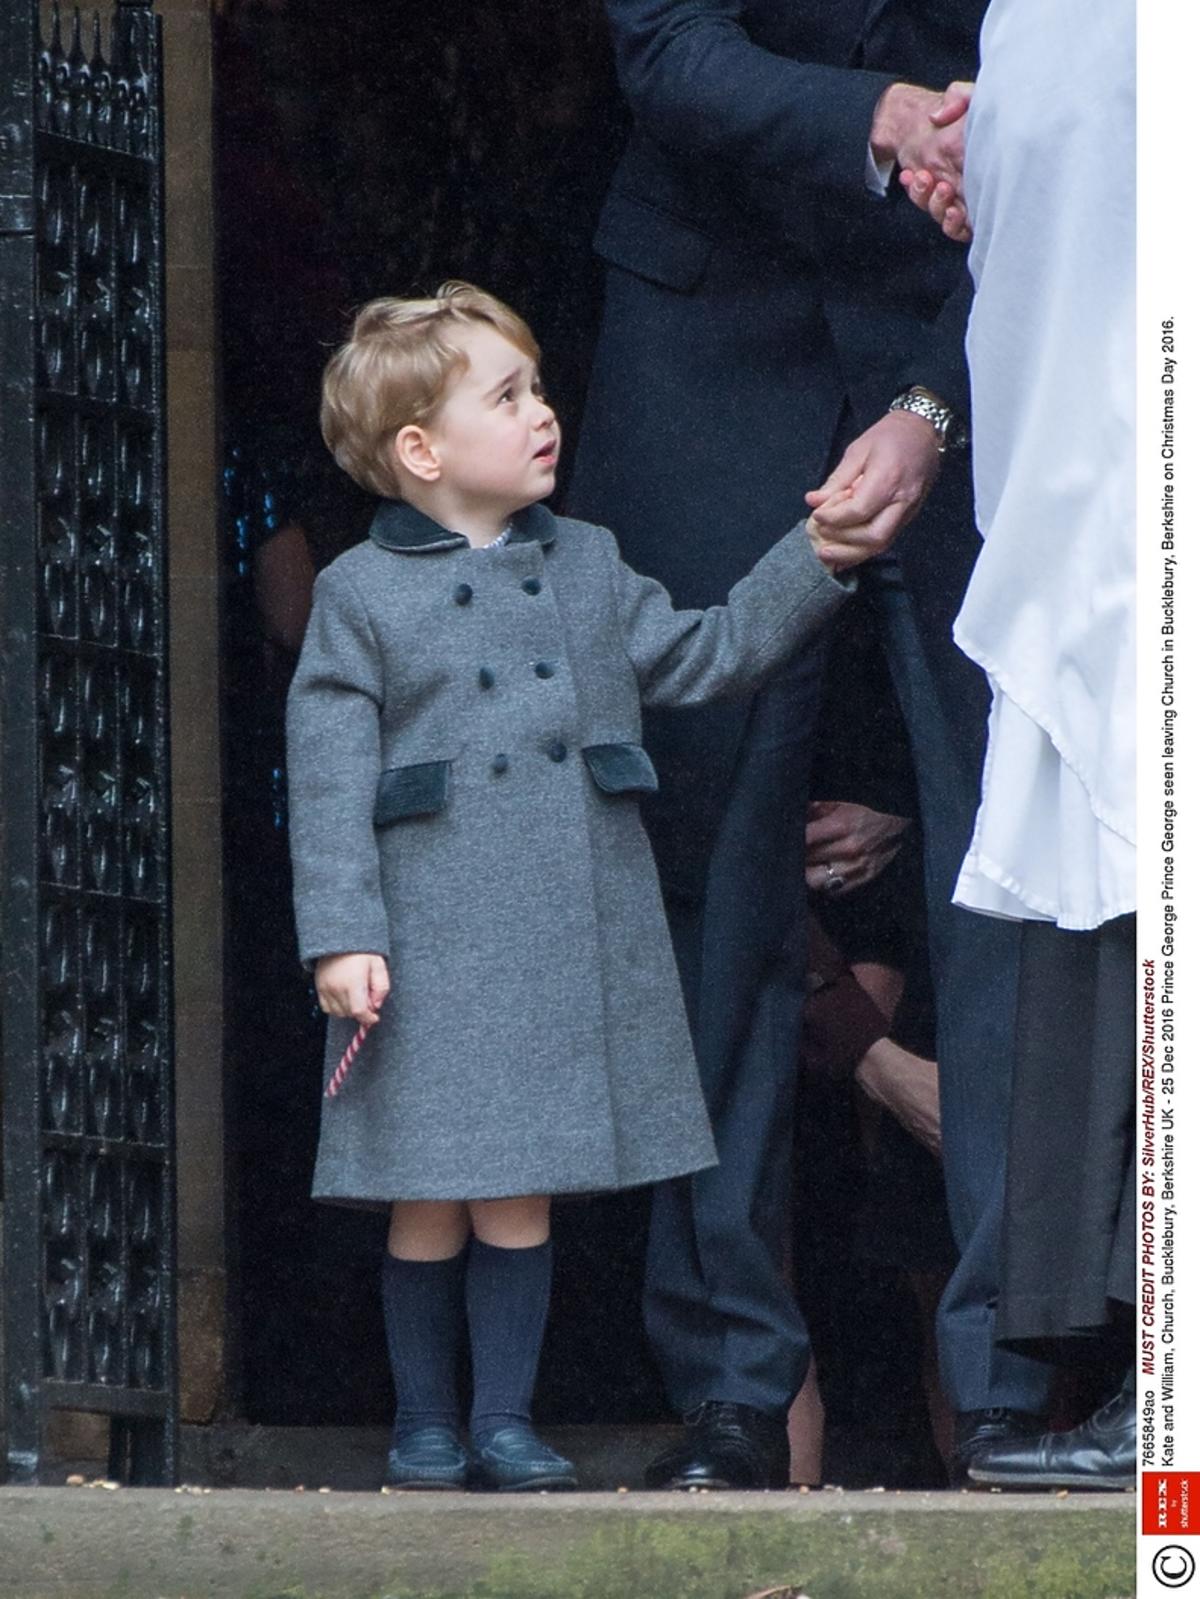 Dlaczego Książę George nosi zawsze krótkie spodenki?